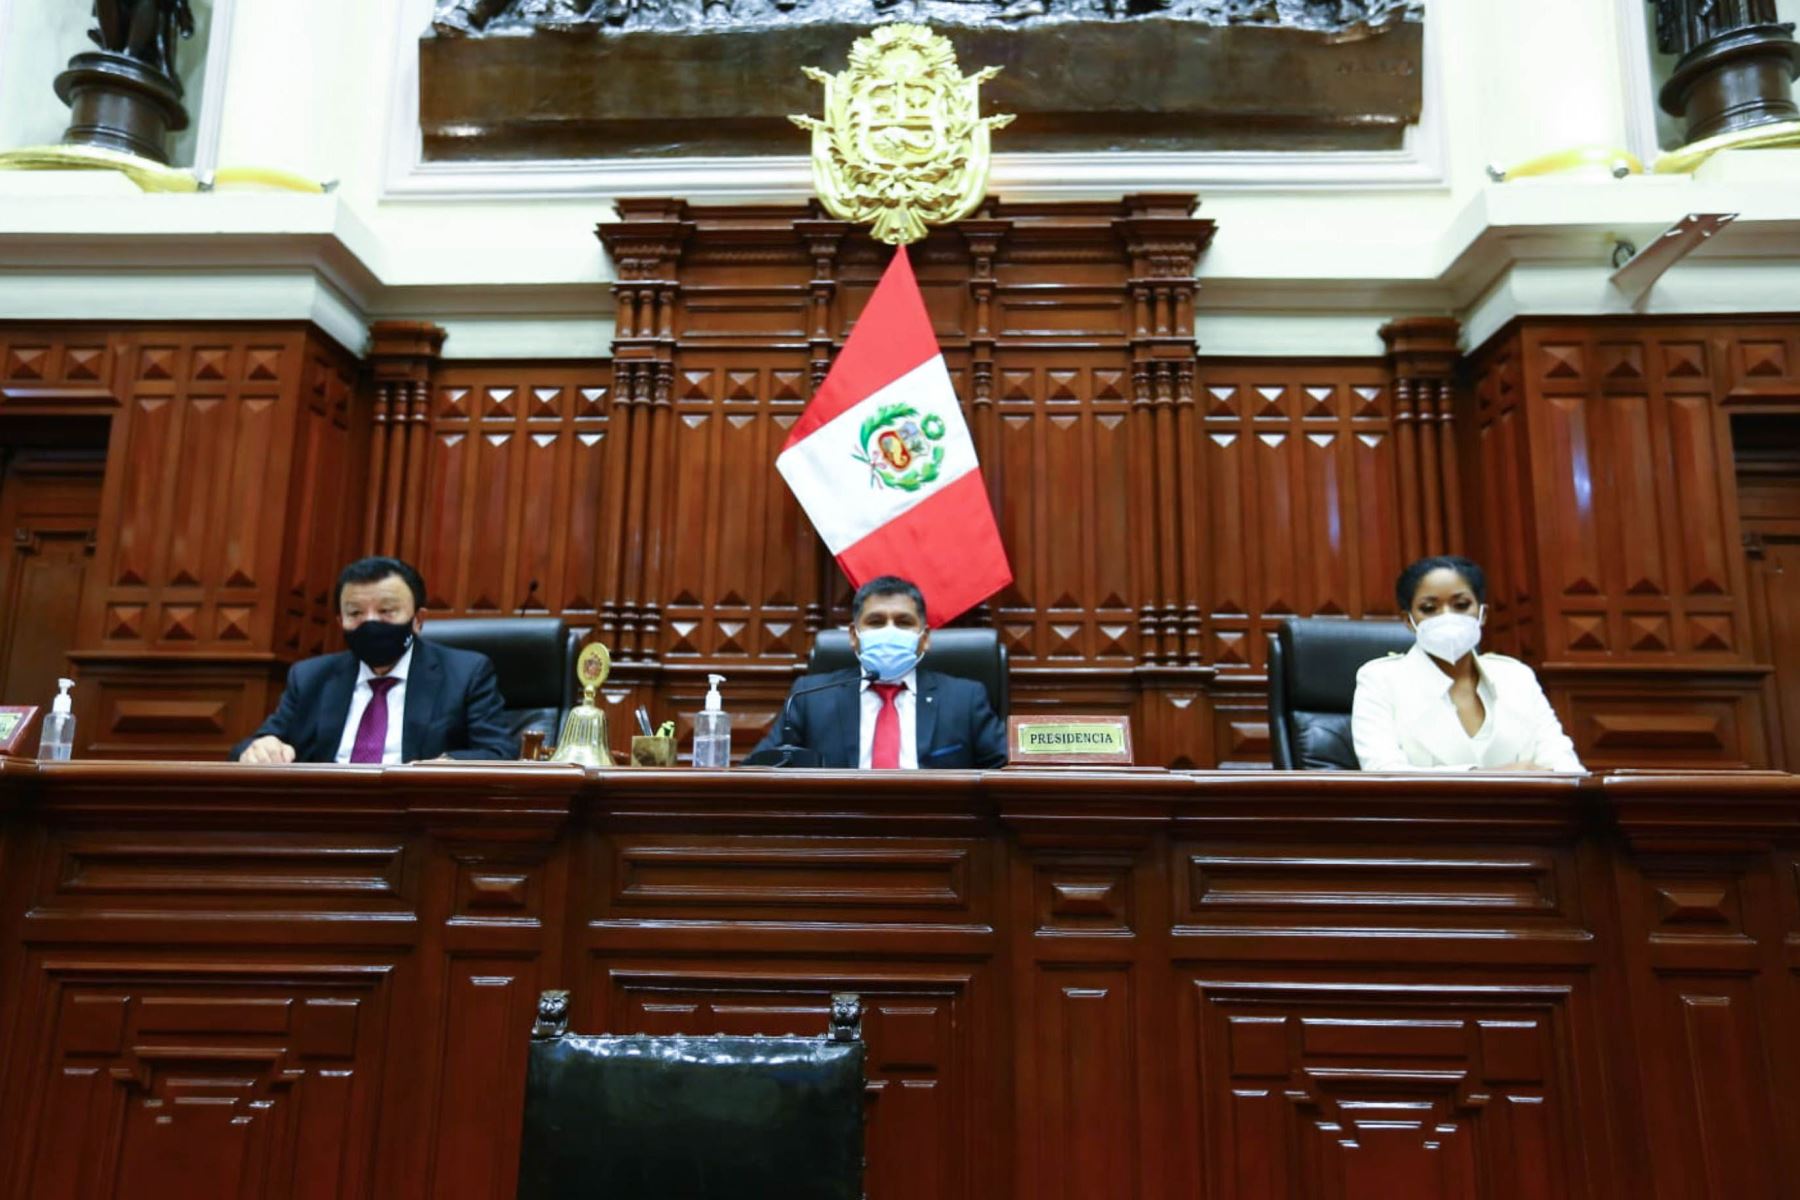 El presidente de la Junta Preparatoria, Bernardo Quito Sarmiento, convocó a la Representación Nacional para este lunes 26 a las 08:00 horas a la sesión en la que se llevará a cabo la elección de la Mesa Directiva del periodo anual de sesiones 2021-2022